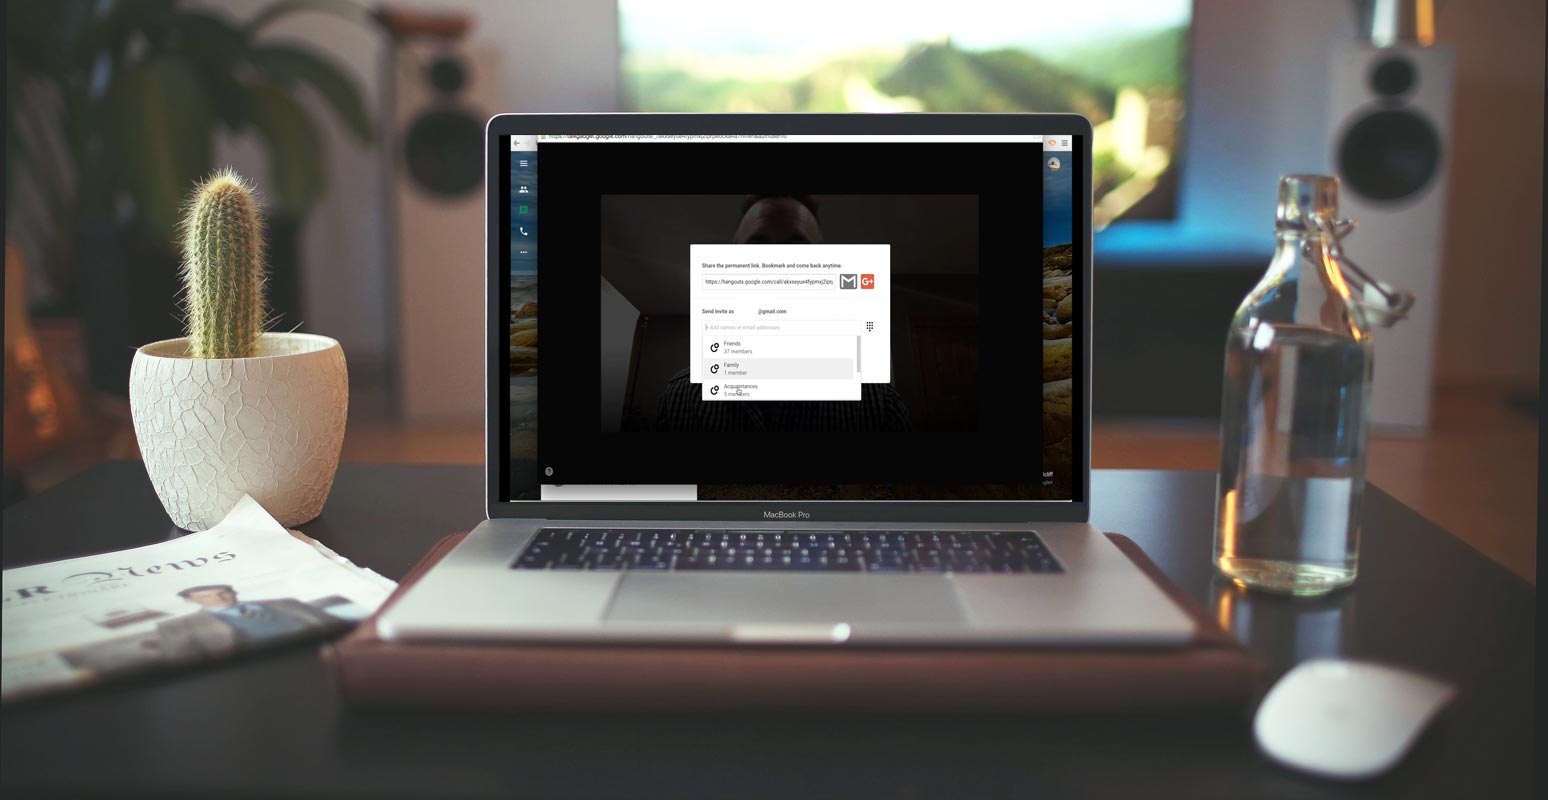 Google hangouts Options Screen in the Macbook Pro